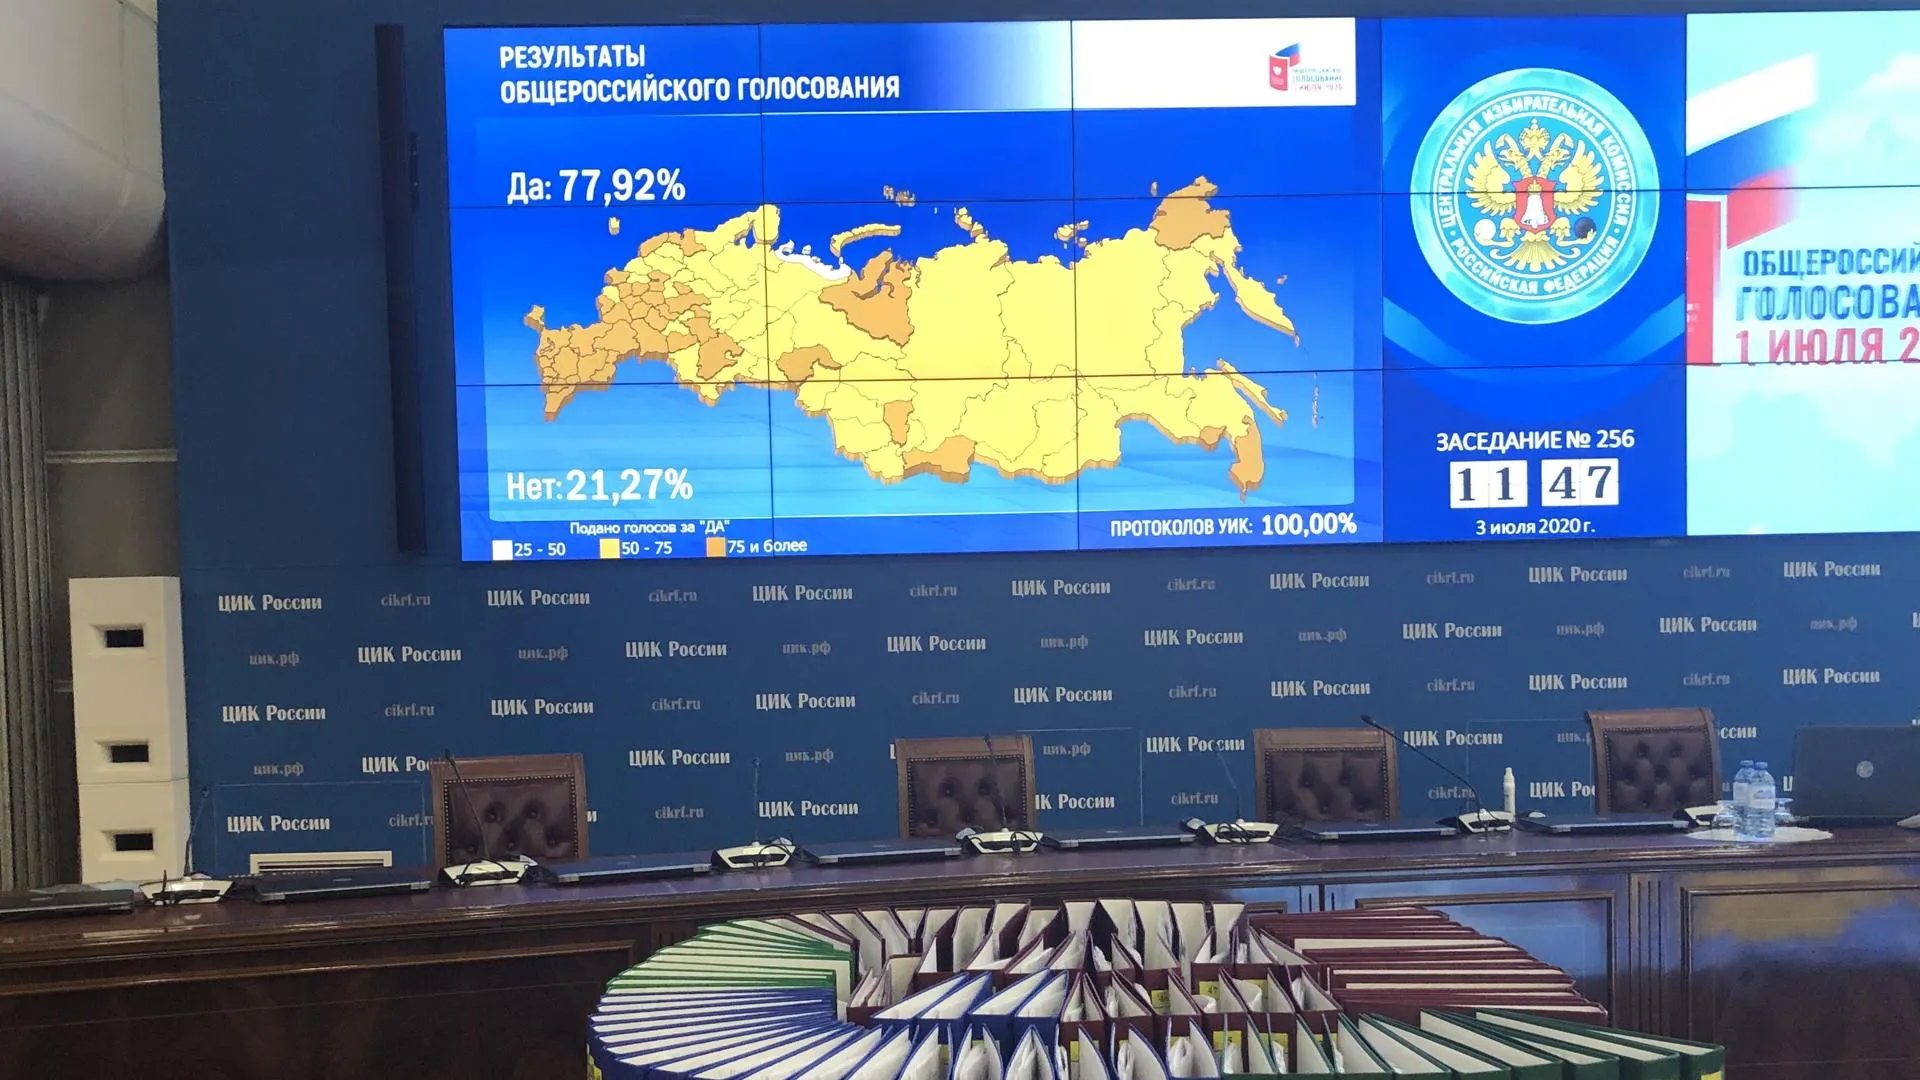 Путин: Результаты голосования показали высокий уровень консолидации общества